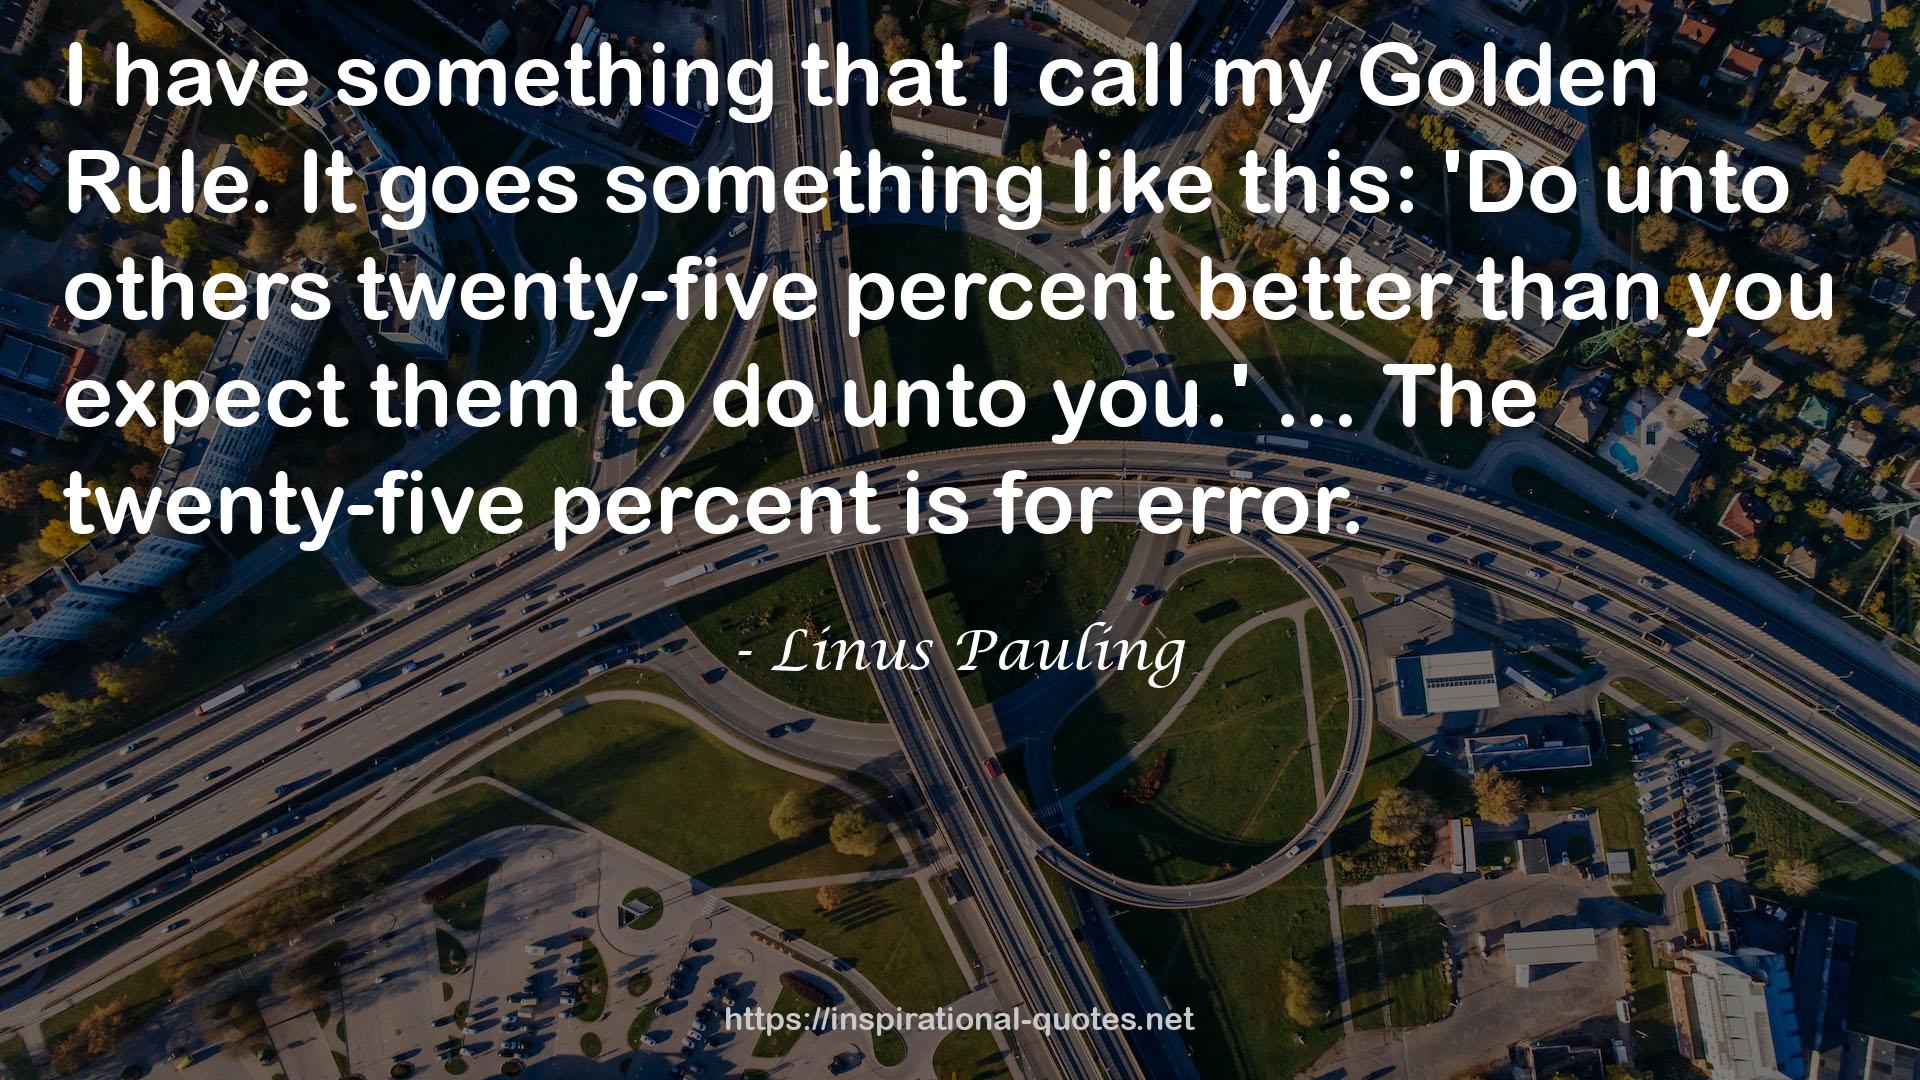 Linus Pauling QUOTES